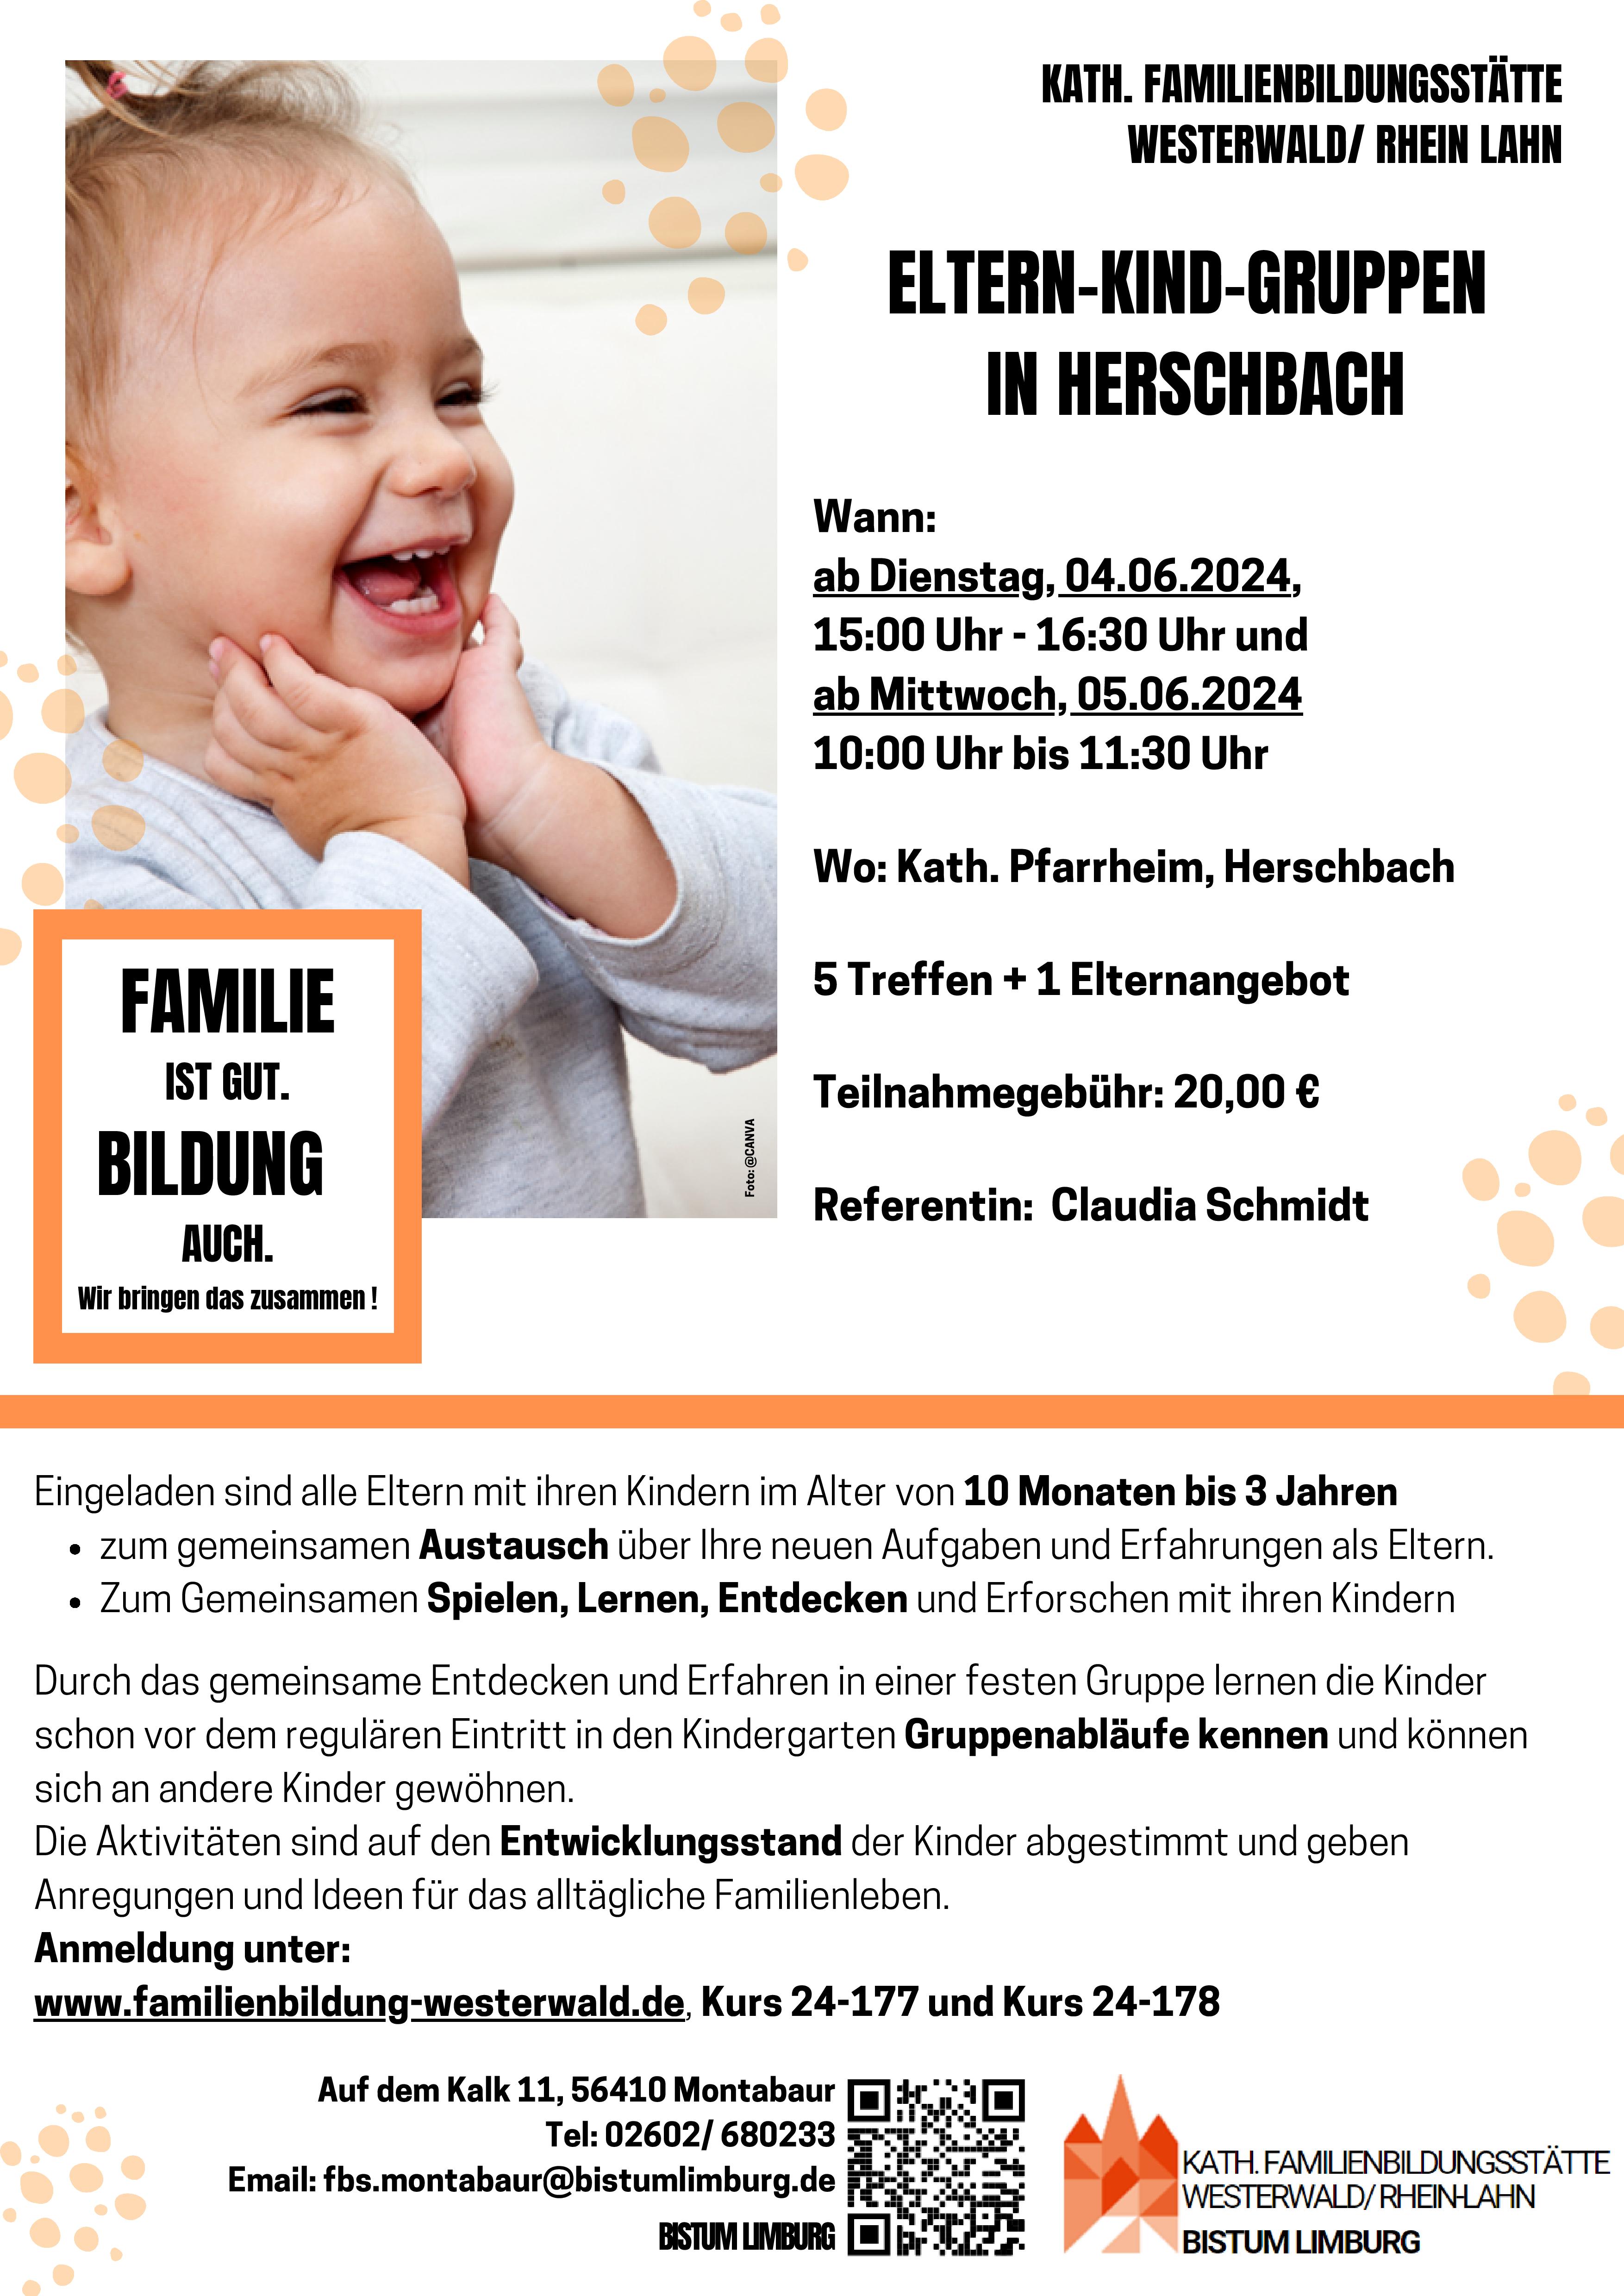 Eltern-Kind-Gruppen in Herschbach - Link zur PDF-Datei